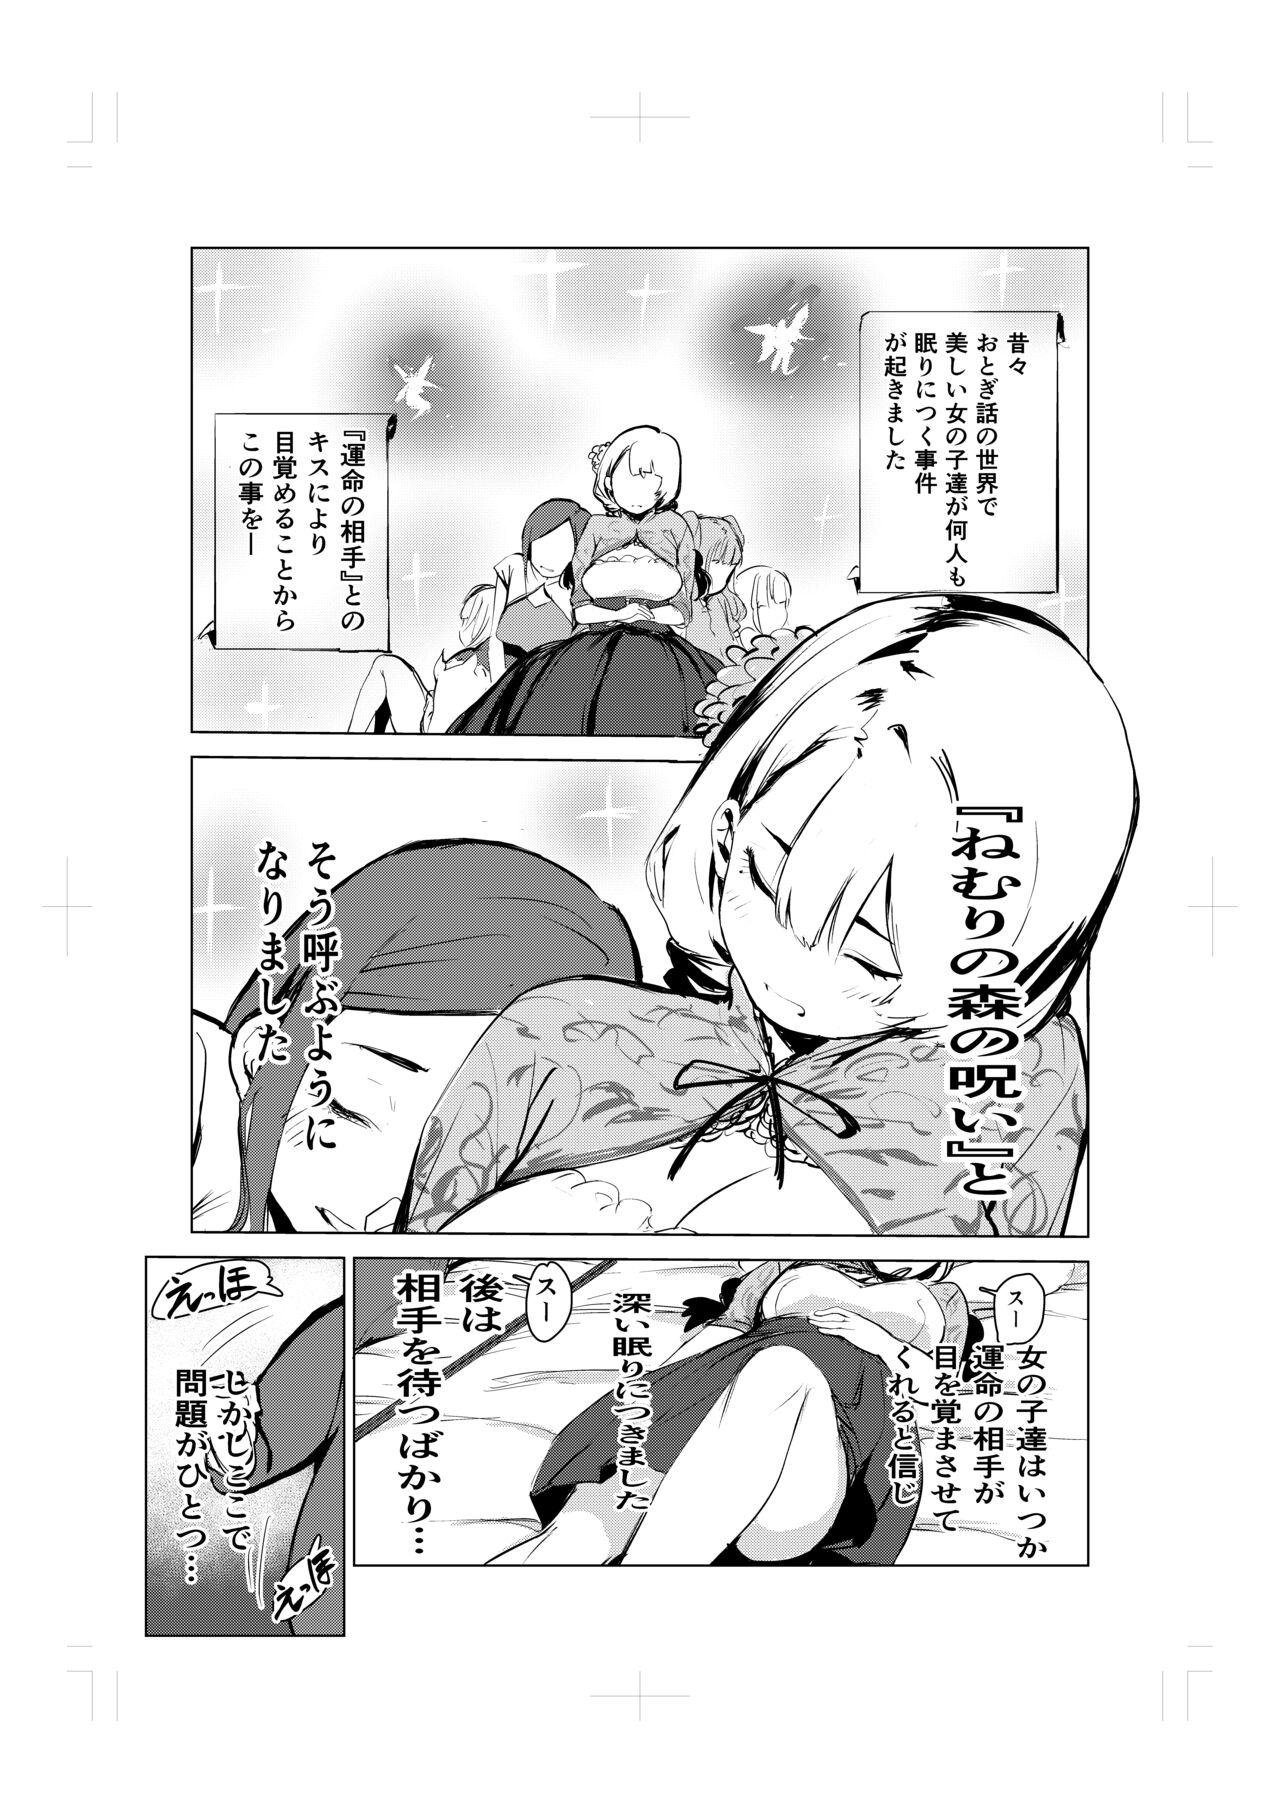 Strapon Nemuri hime no ketsu ana ne bakku monogatari - Original Pierced - Page 3